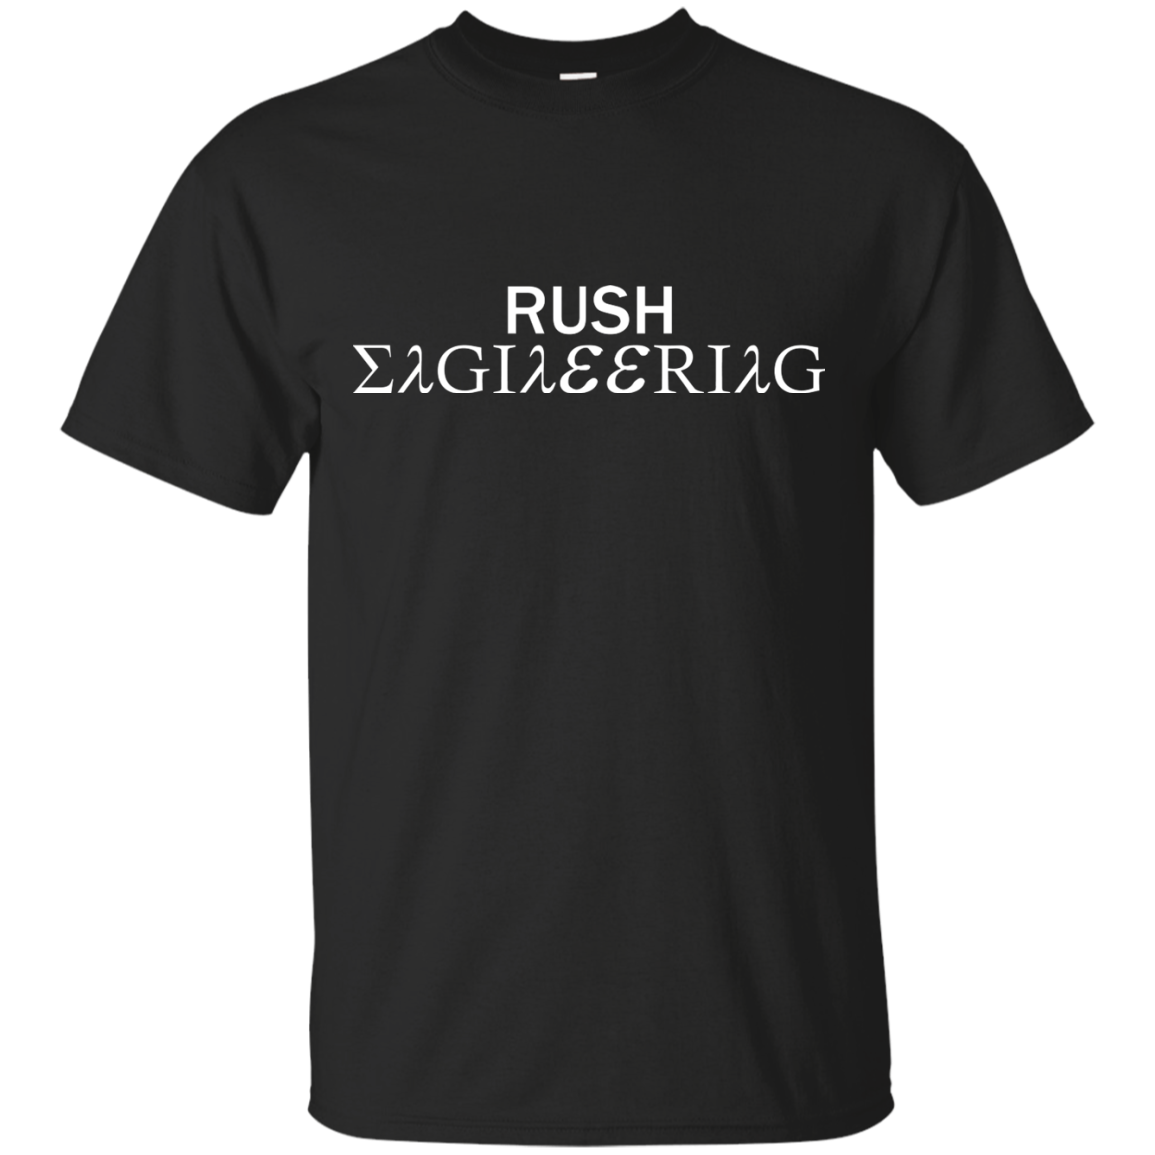 Rush Engineering